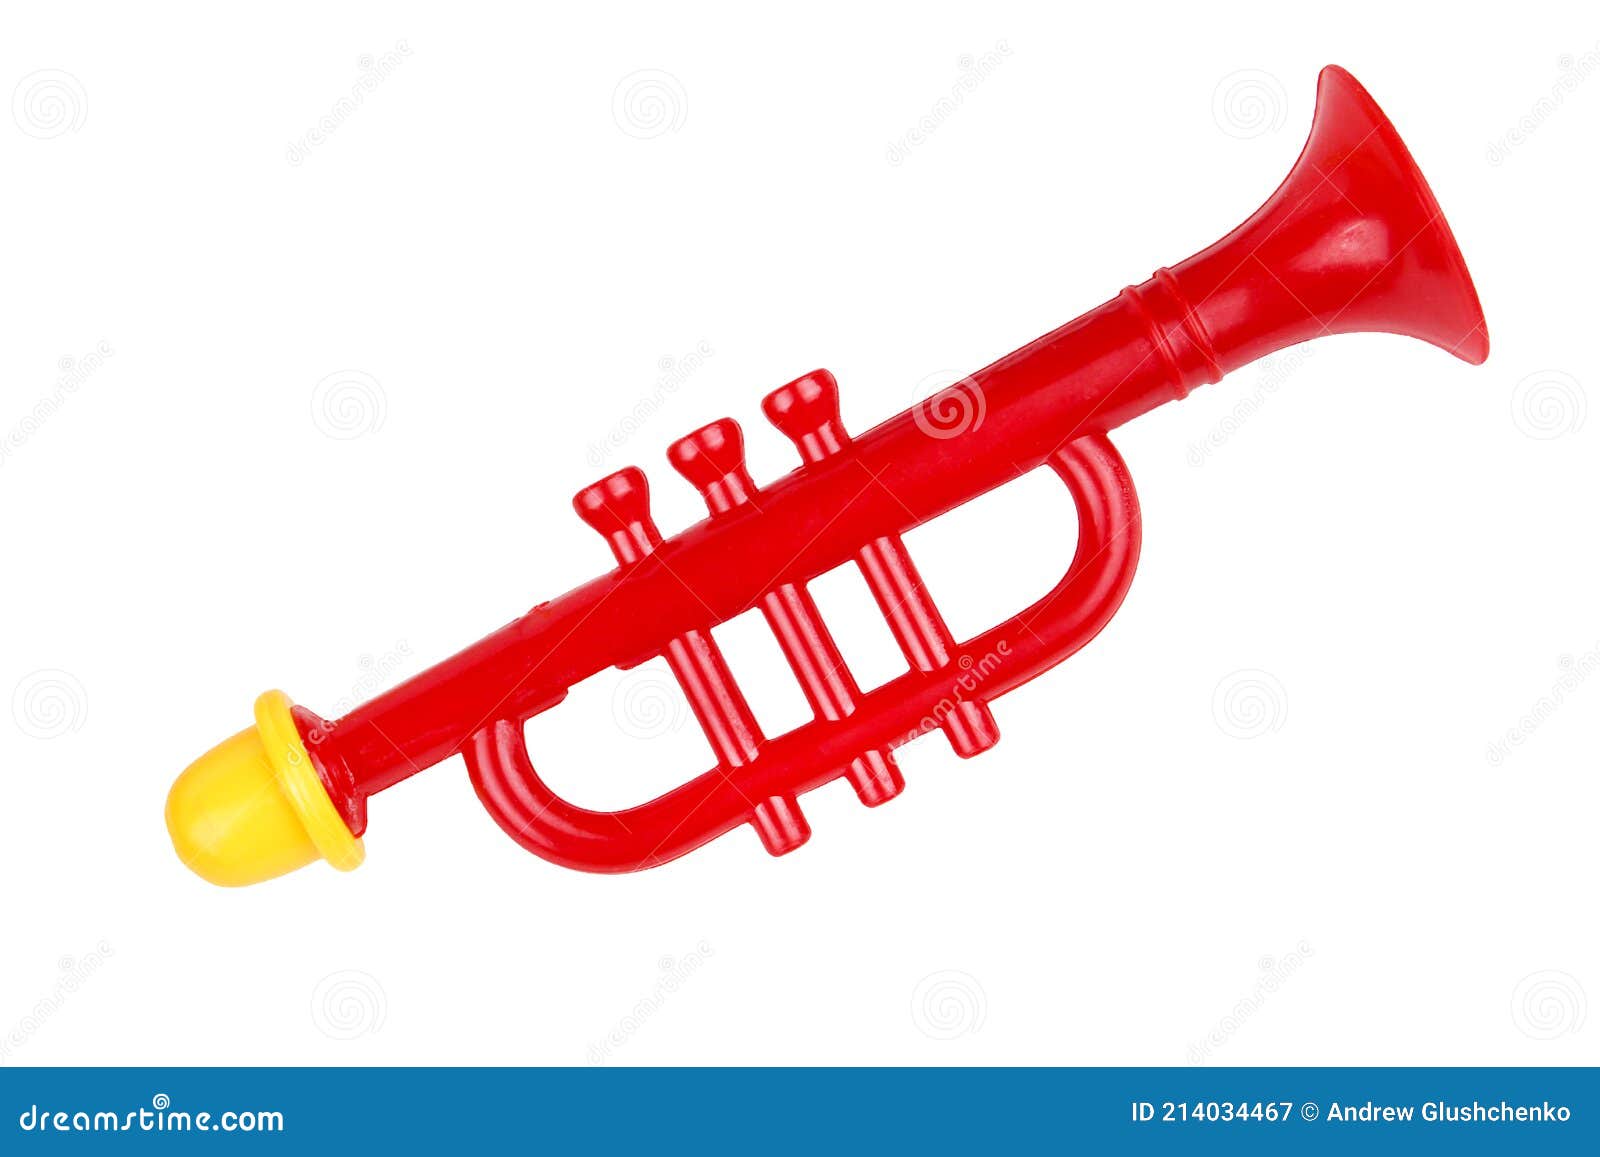 Trompeta De Juguete De Color Rojo. Instrumento Musical Infantil